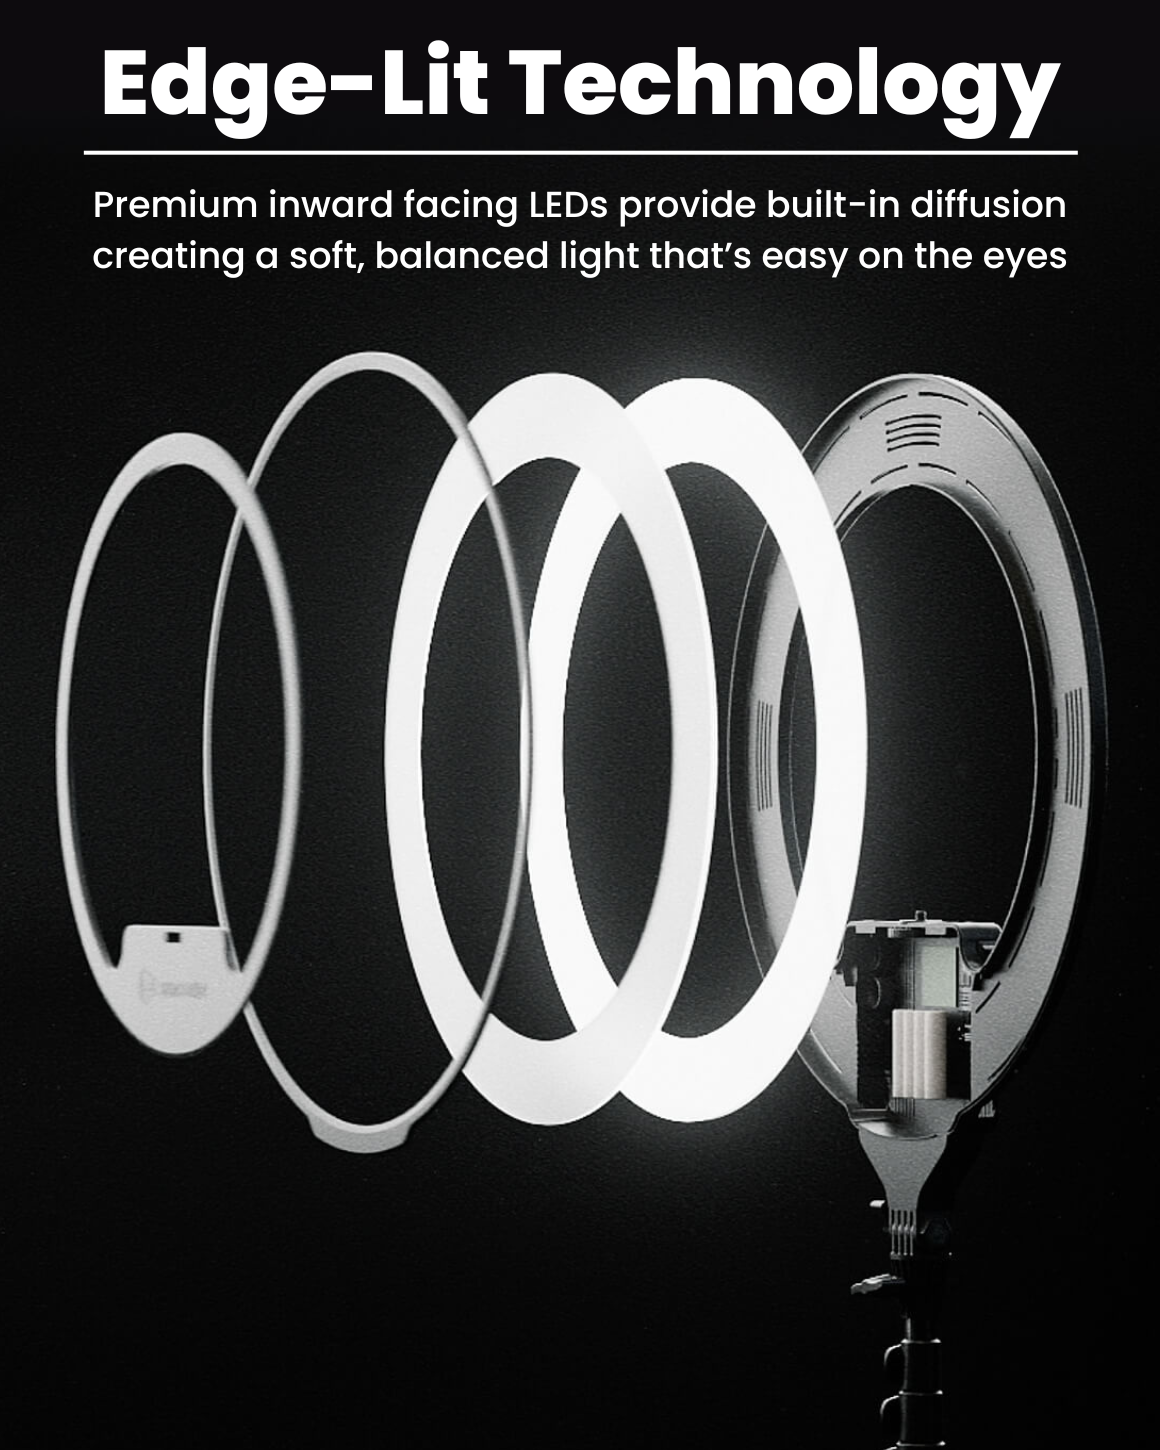 Lume Cube Cordless Ring Light Pro Black 18-inch Edge-Lit LED Ring Light